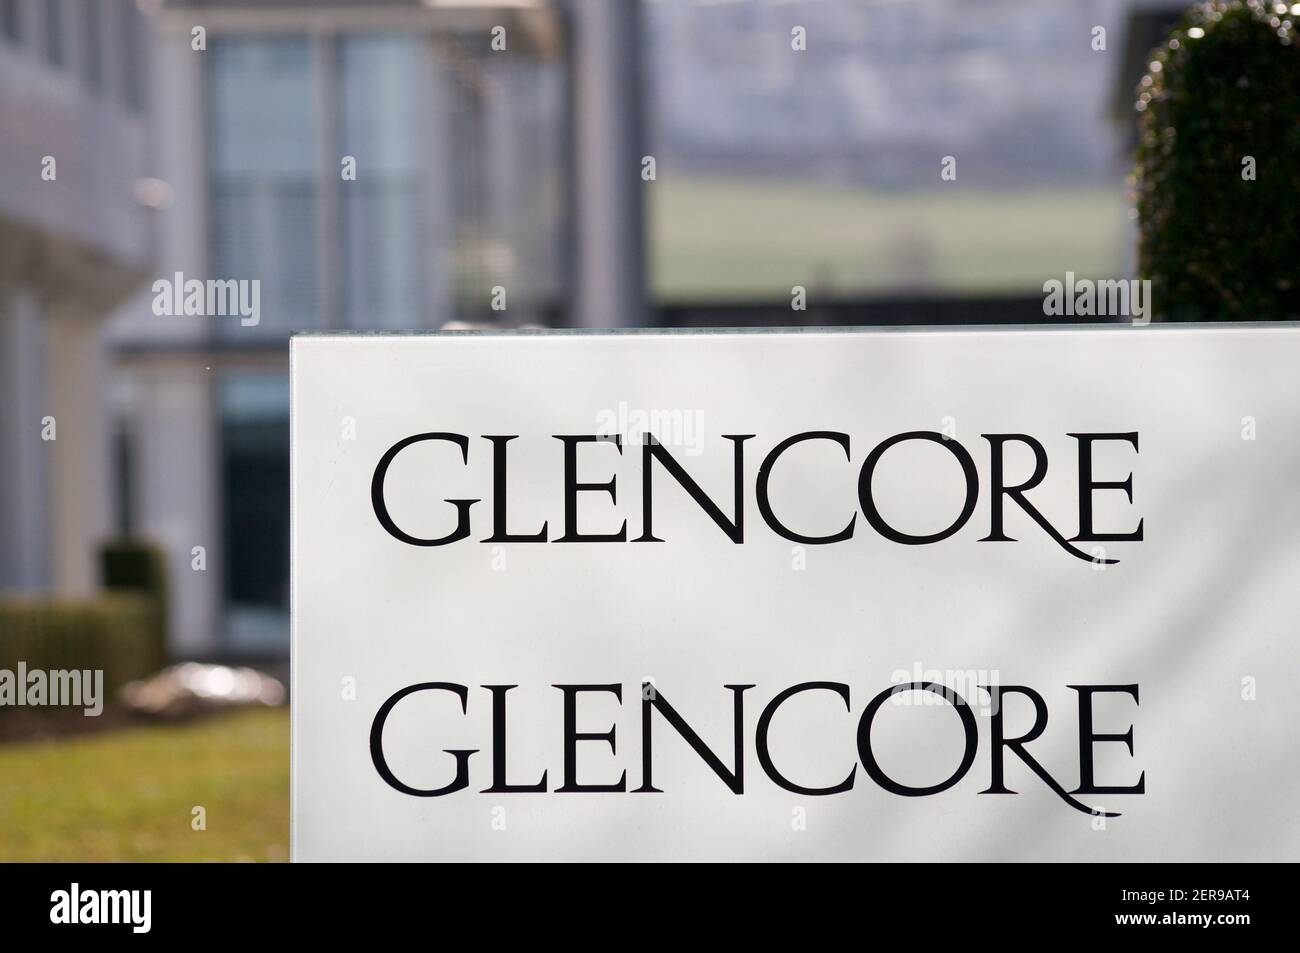 Zug, Suisse - 26 février 2021 : signe du siège de la société Glencore à Zug, Suisse. Glencore est l'une des plus grandes marchandises Banque D'Images